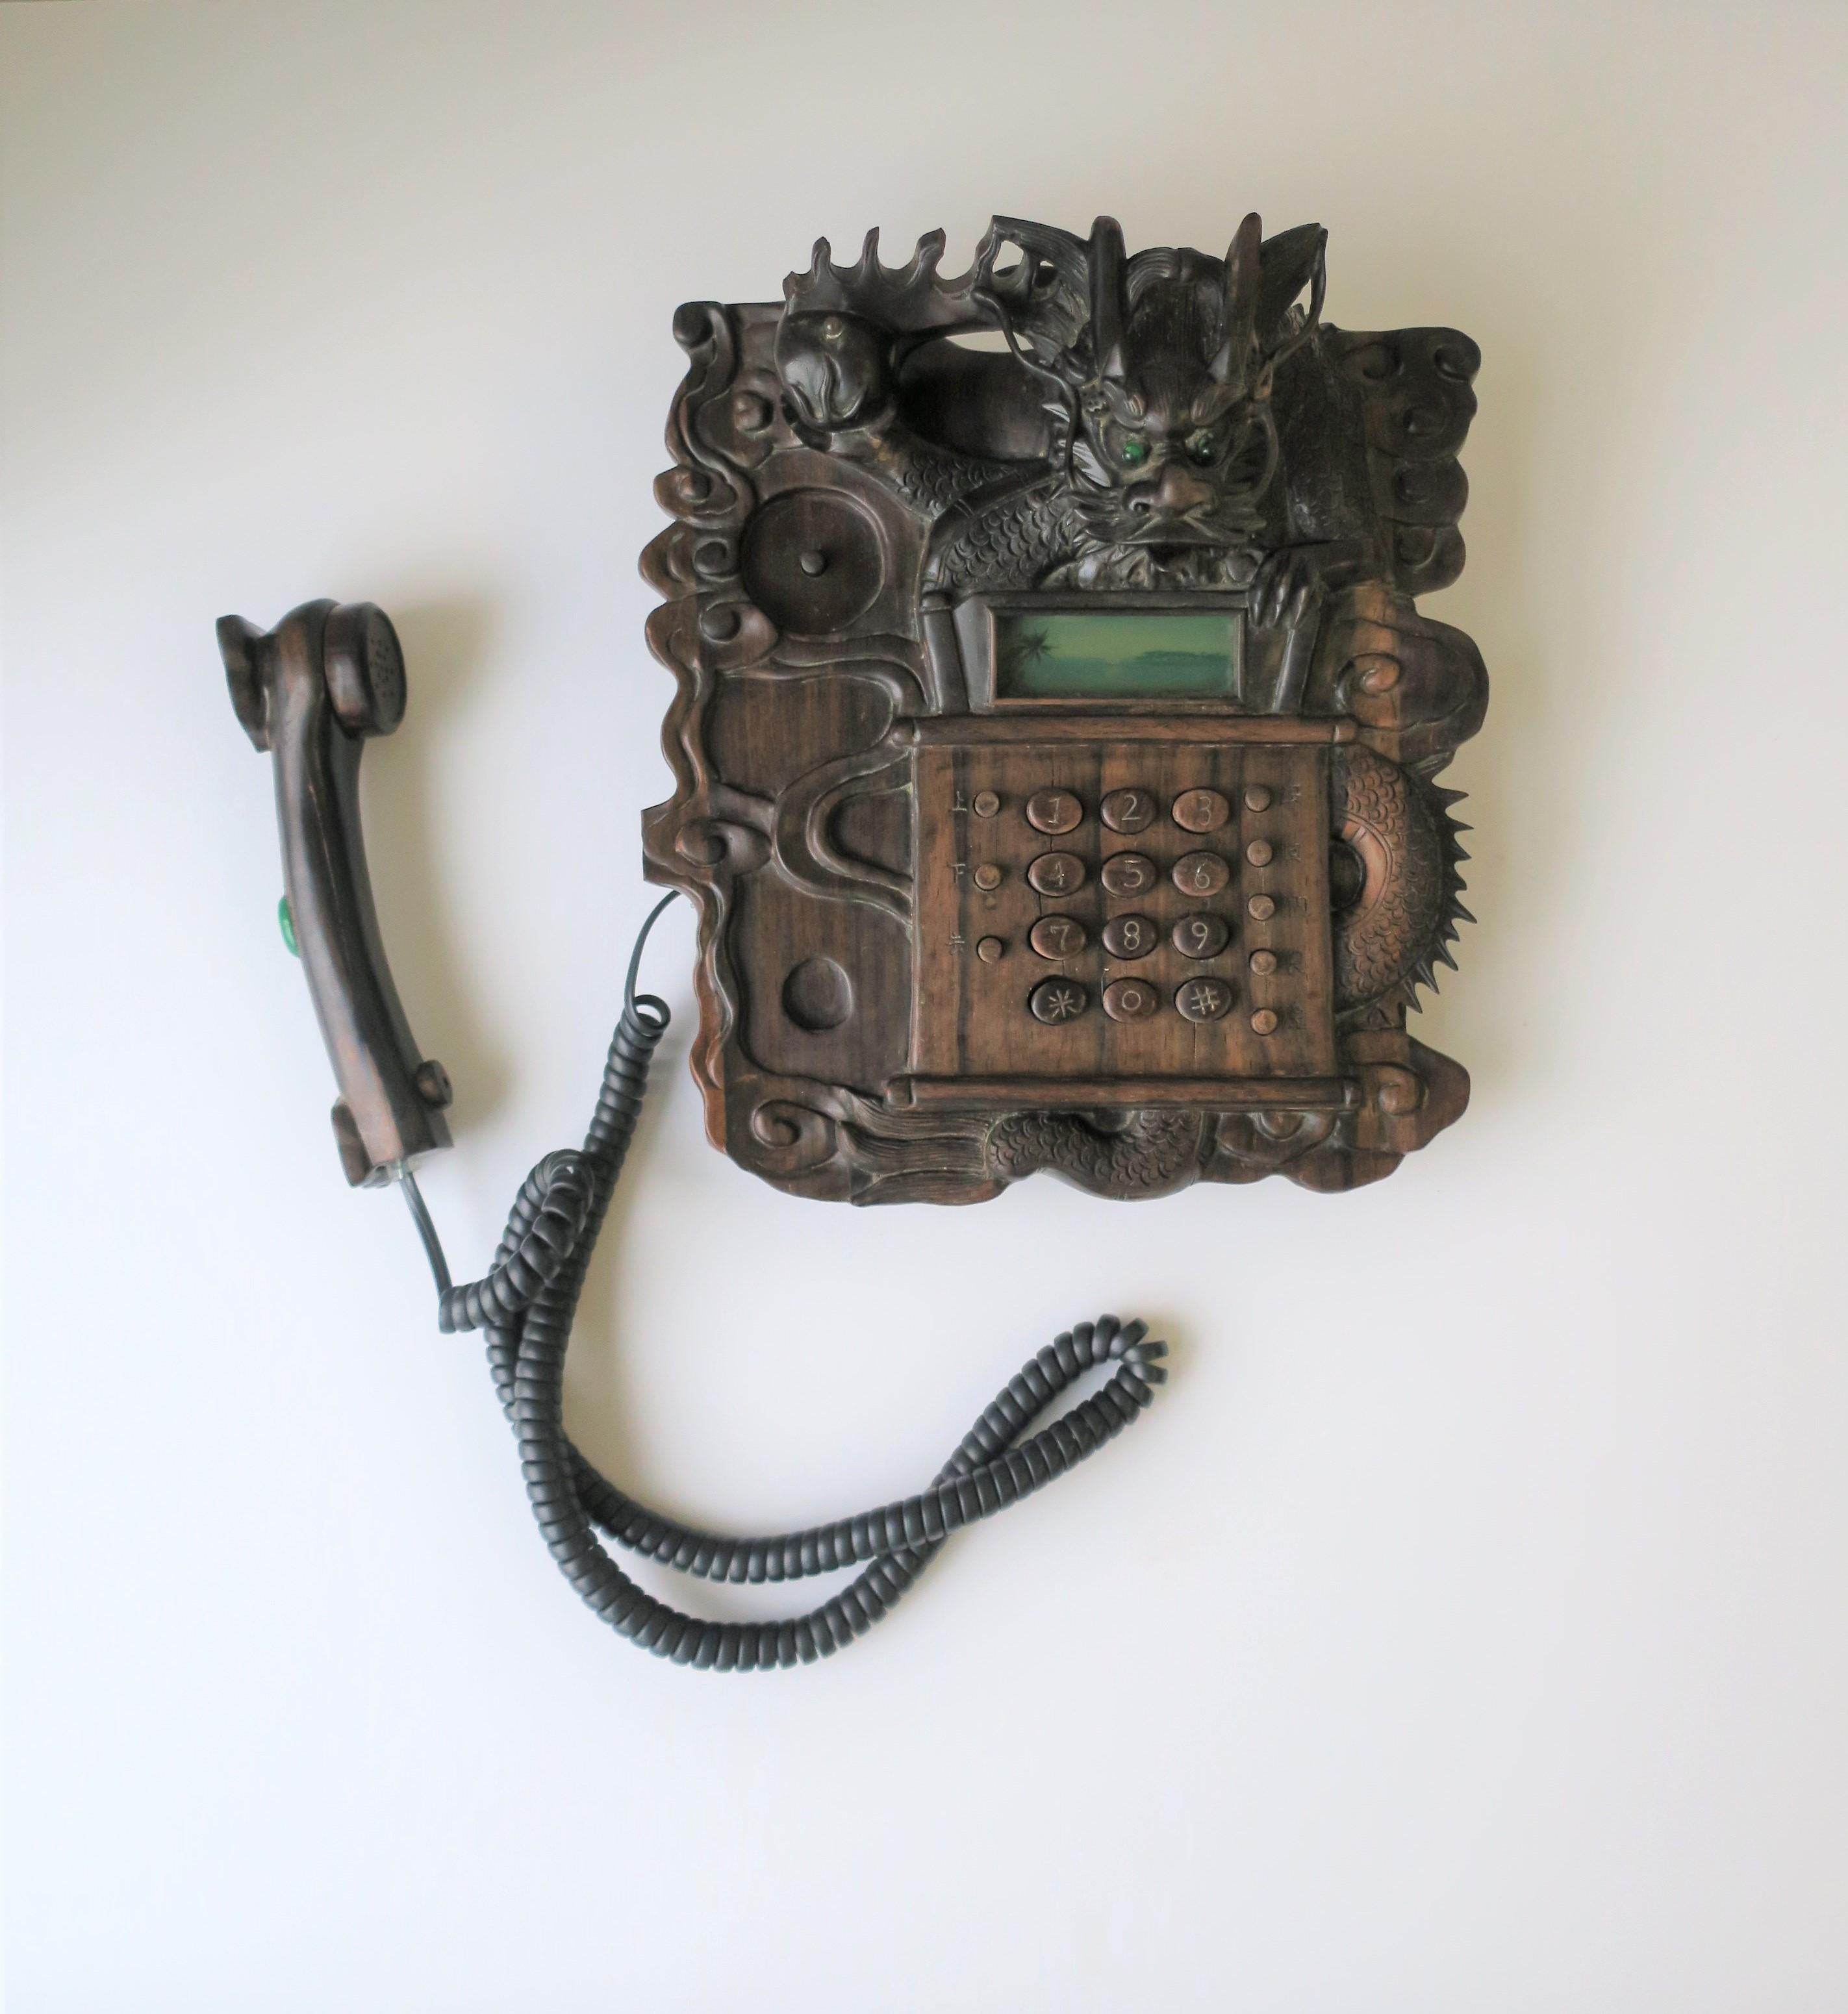 Ein sehr schönes, seltenes und exotisches chinesisches Drachenfestnetztelefon, ca. 1980er-1990er Jahre. Telefon ist eine harte geschnitzte Holz mit allen Details eines Drachen (Klauen, Zunge, Hörner, Schwanz, etc.) Telefon Griff hat eine schöne